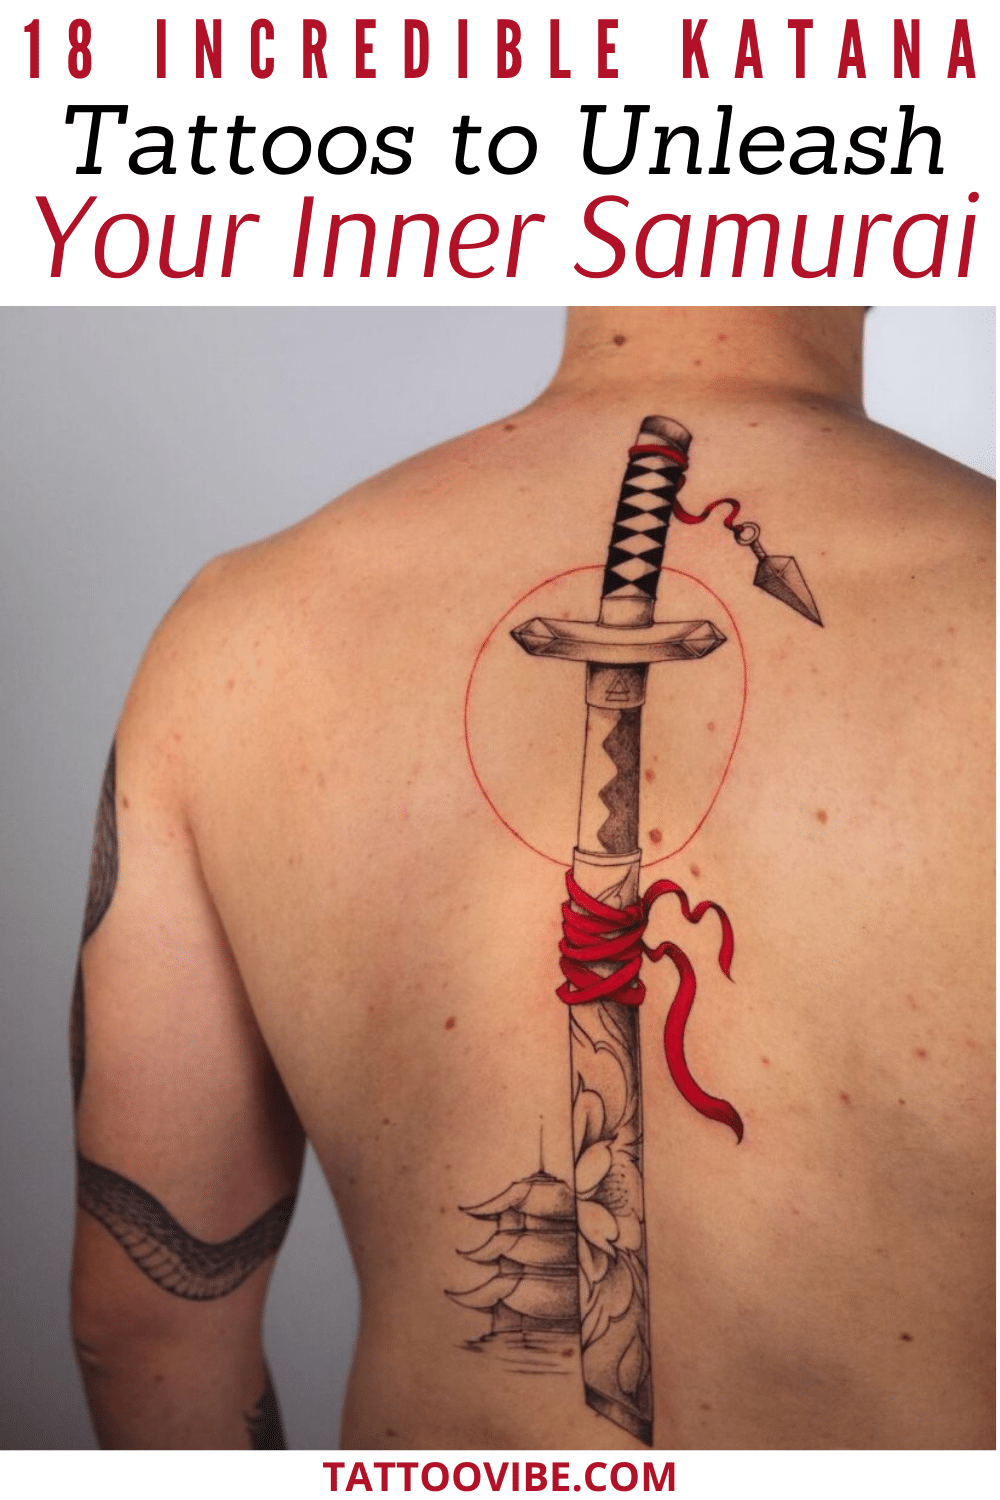 18 incroyables tatouages de katana pour libérer le samouraï qui sommeille en vous